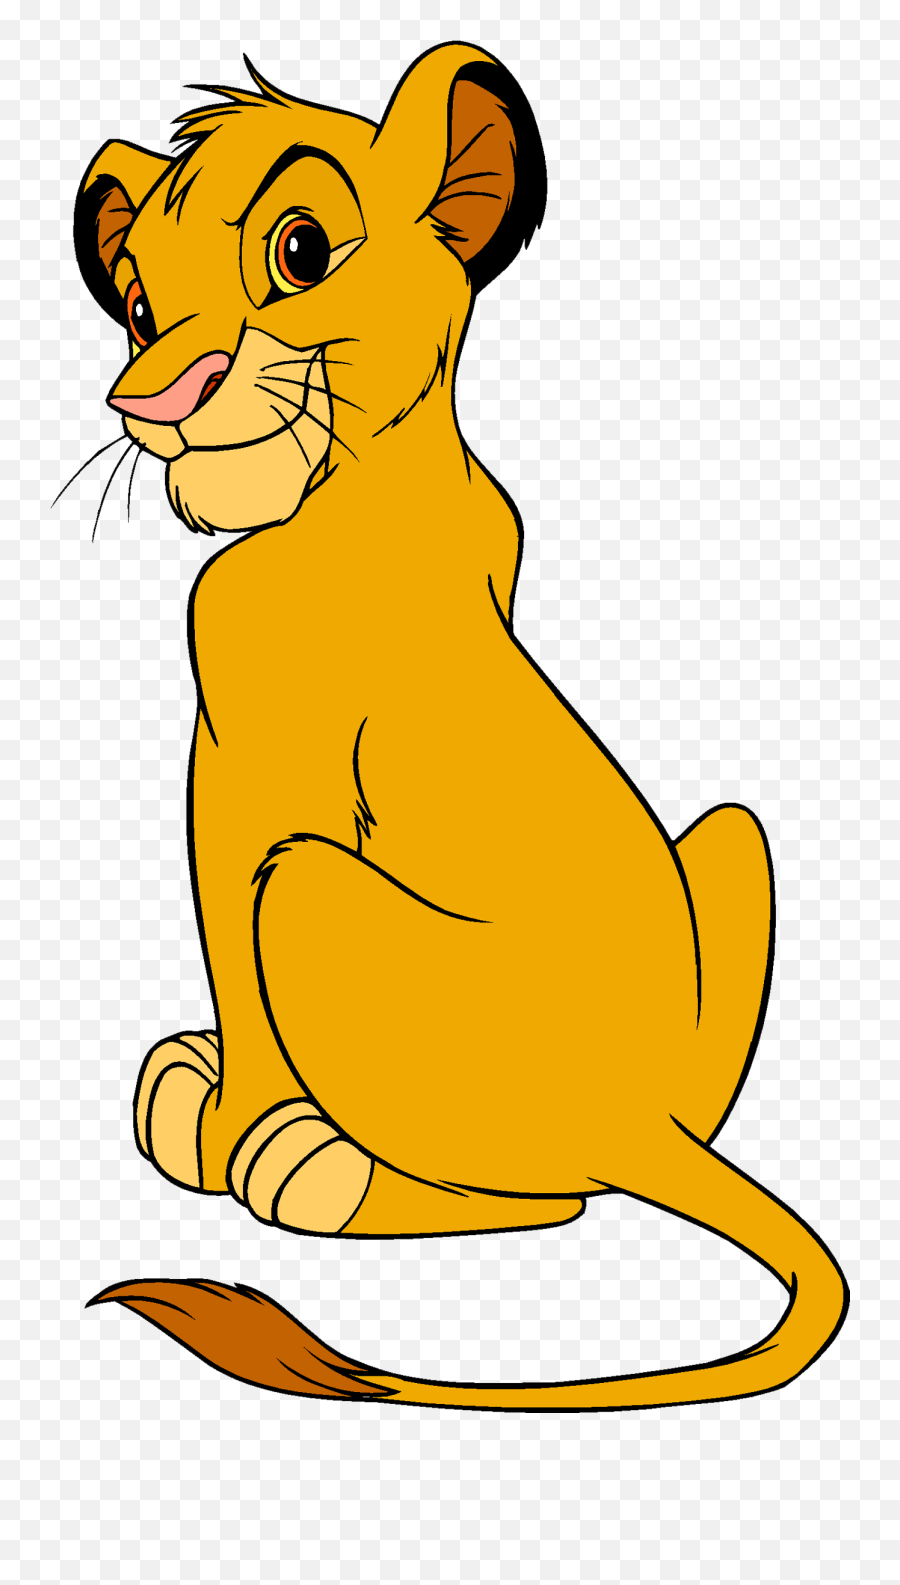 Lion King Png Image - Simba Cartoon Lion King Emoji,Lion King Emoji